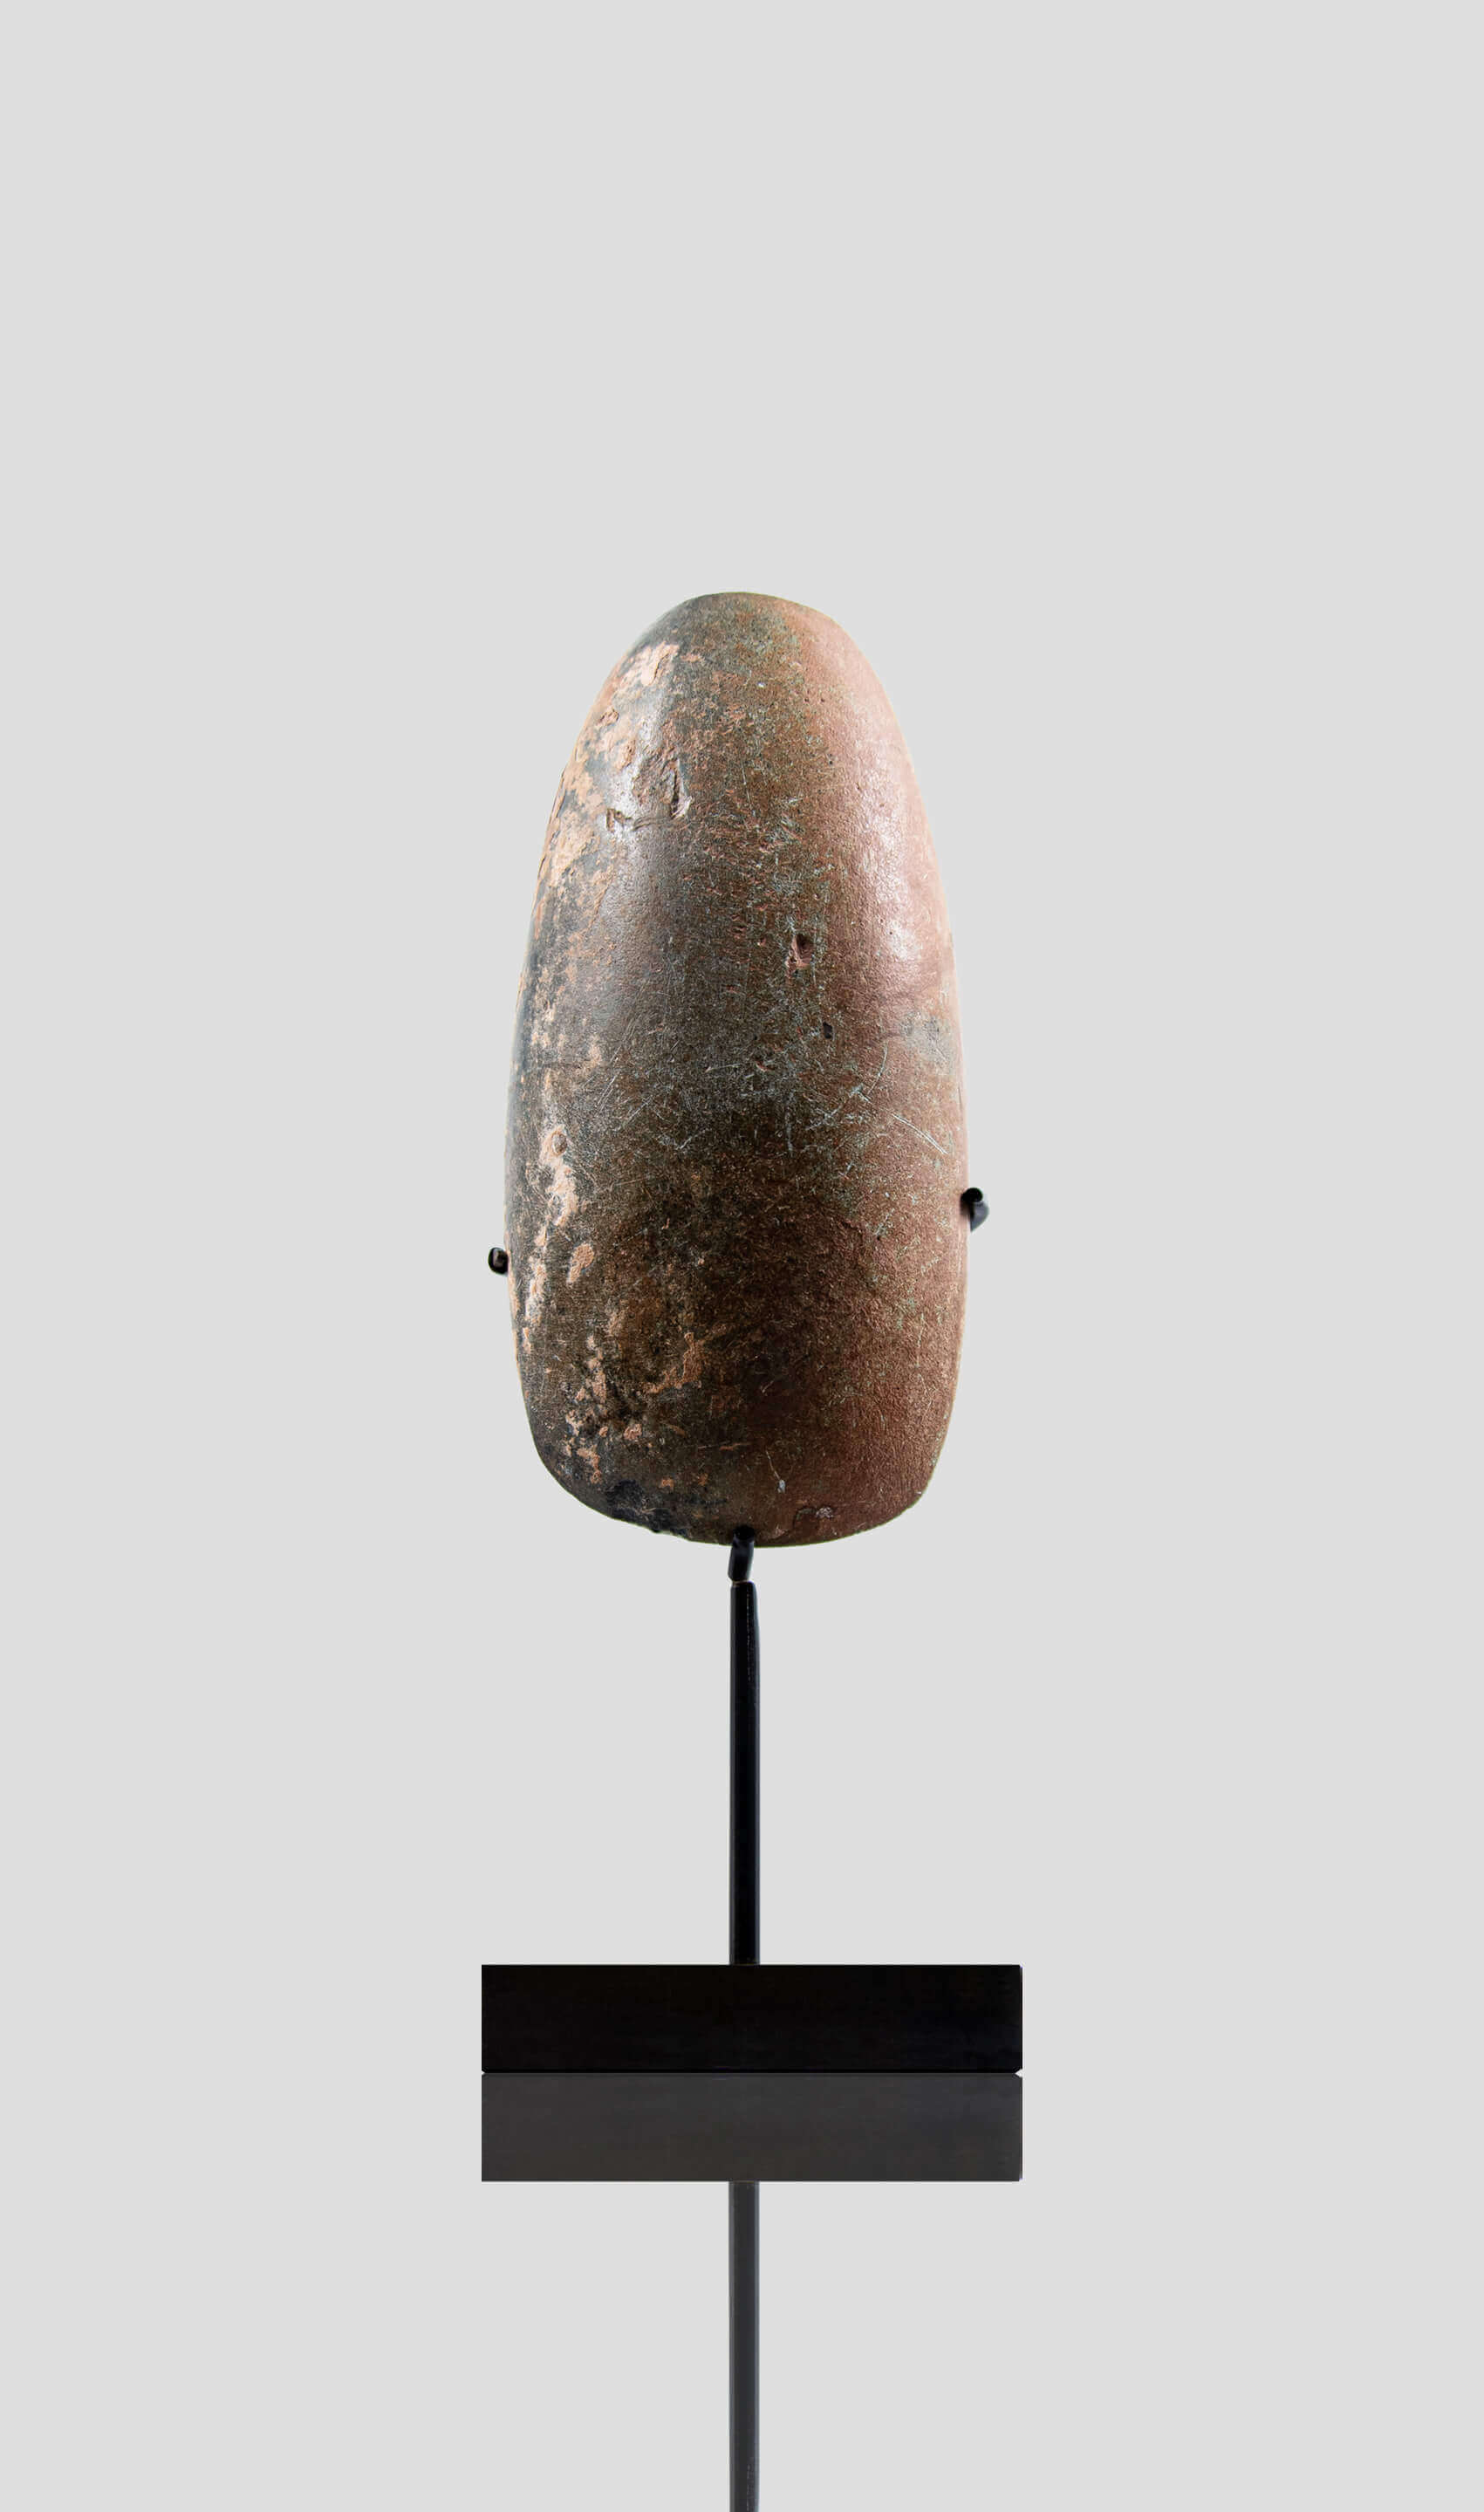 アーティファクト 新石器時代 カプシアン 手斧 [紀元前 8,500 年] 230mm